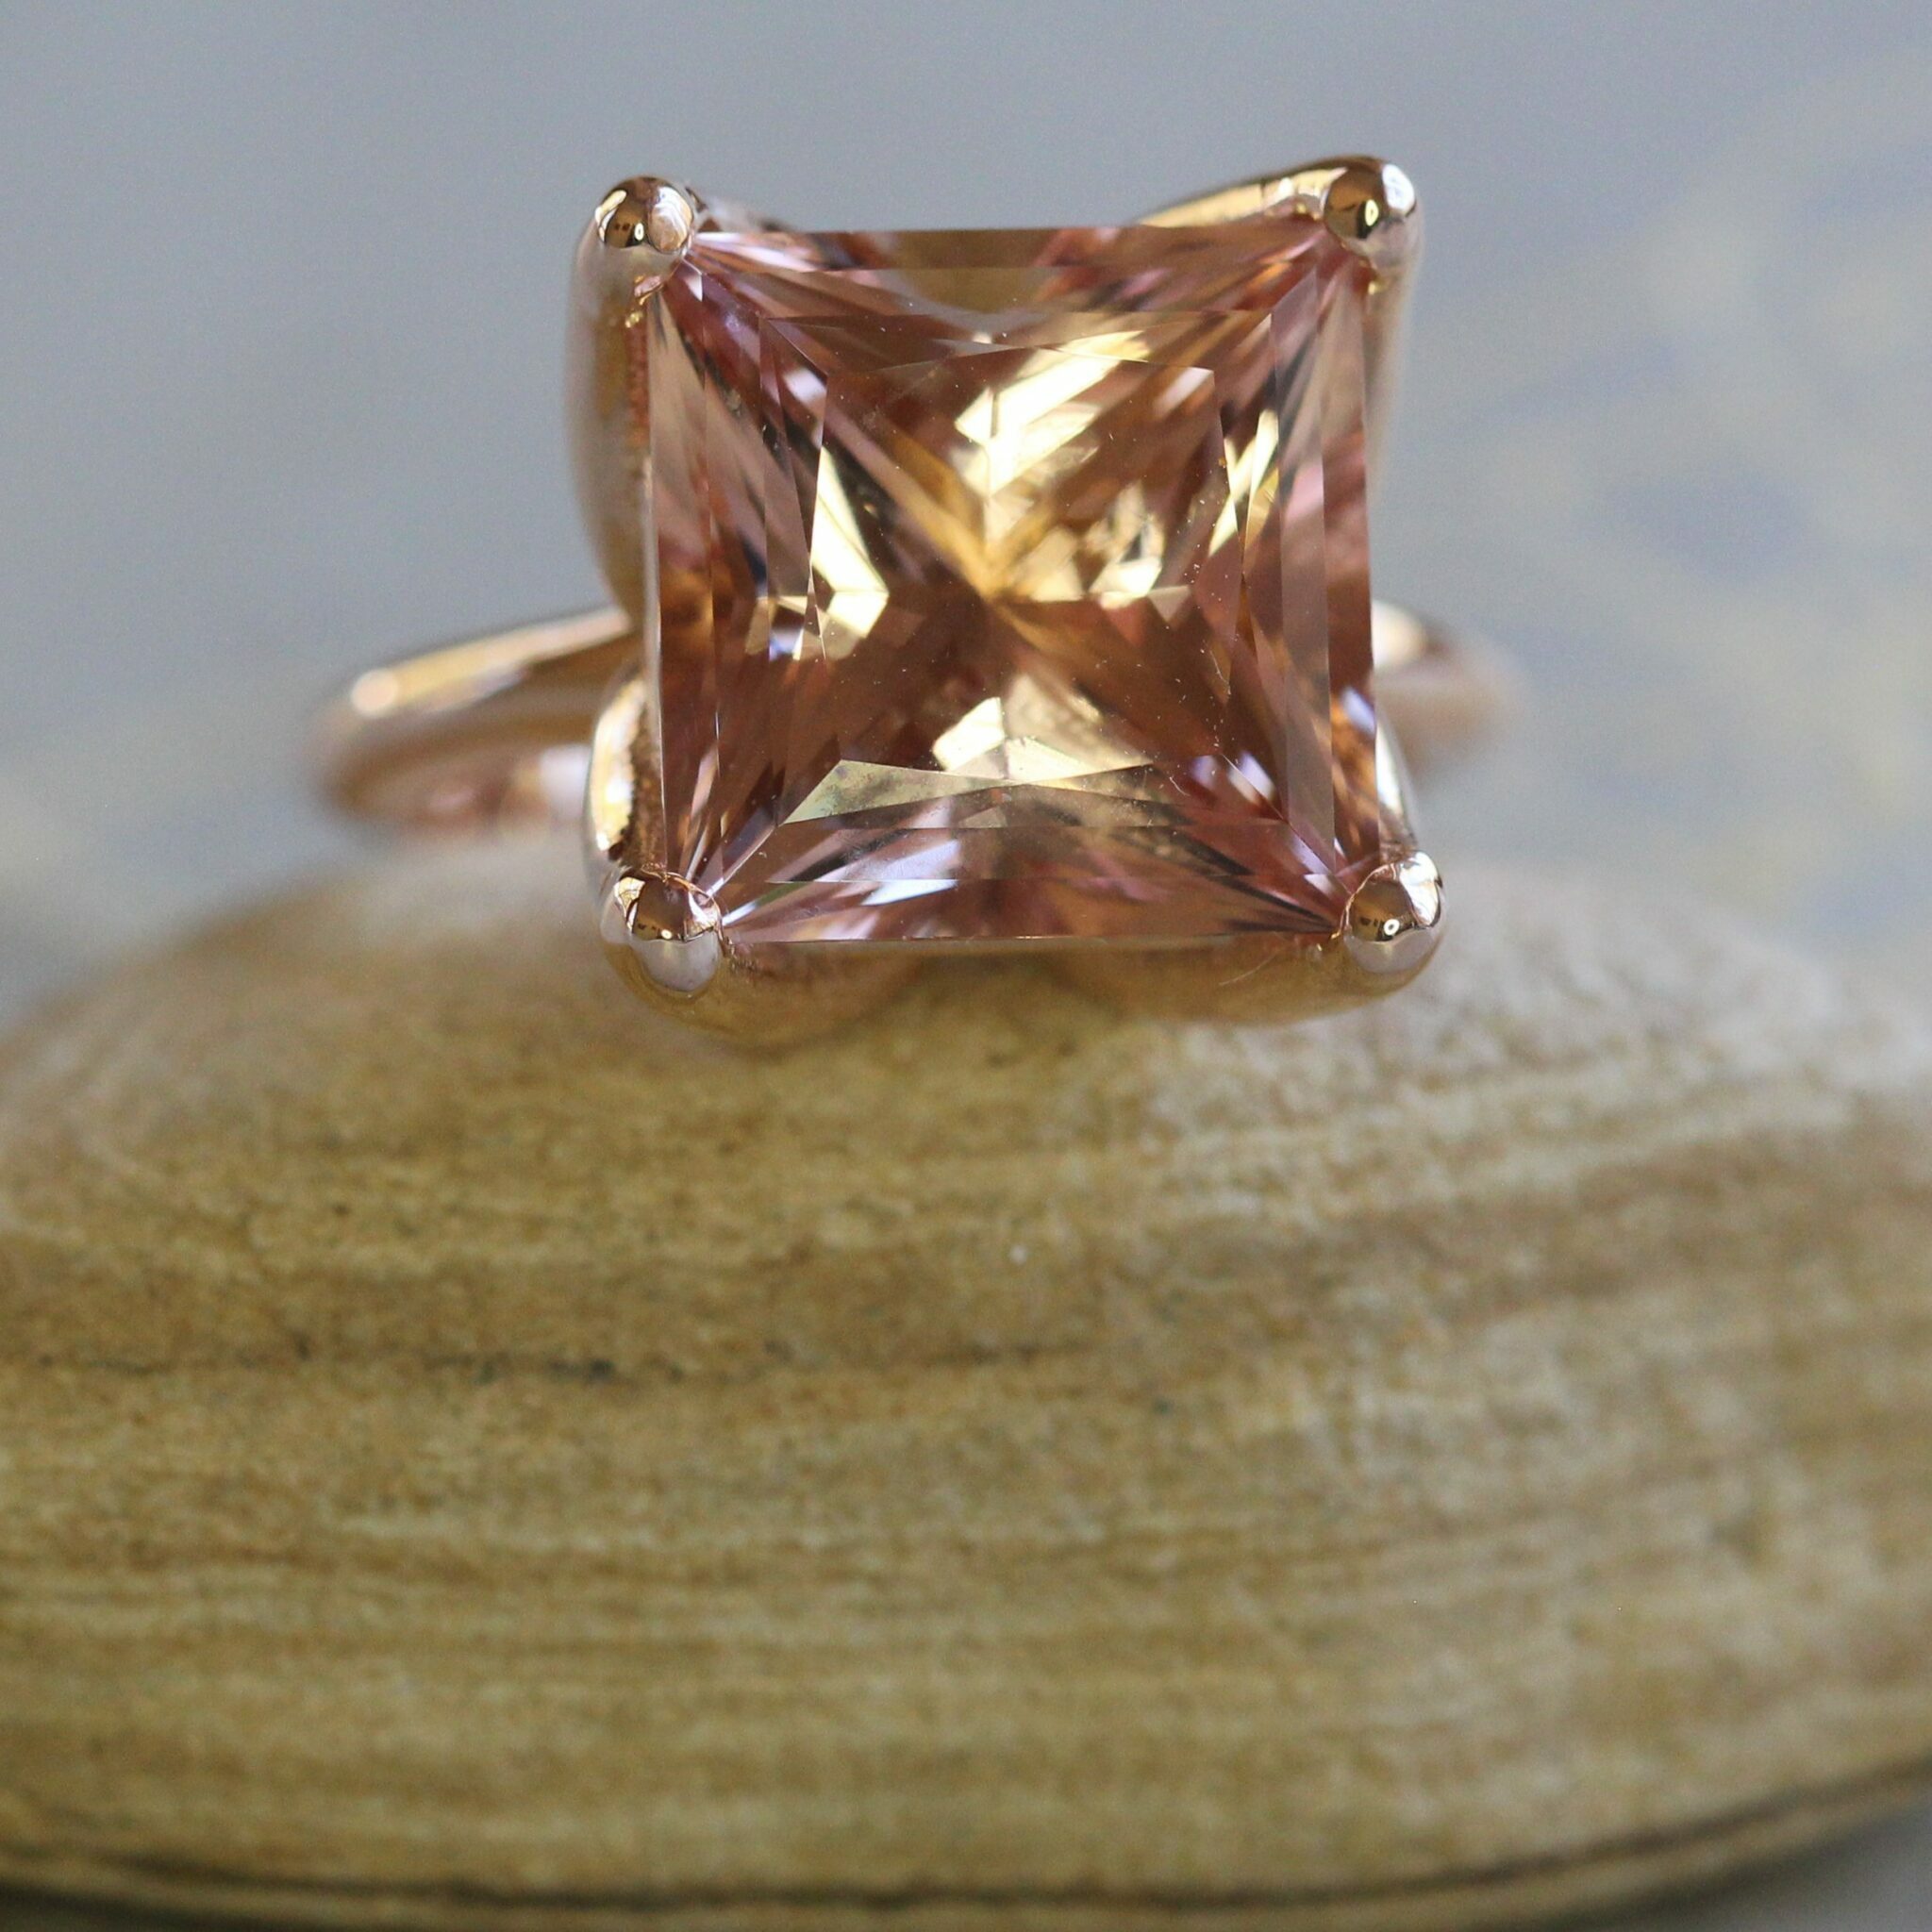 7-carat-Princess-Cut-Morganite-and-Rose-Gold-Ring-by-Laurie-Sarah-LS6056-1